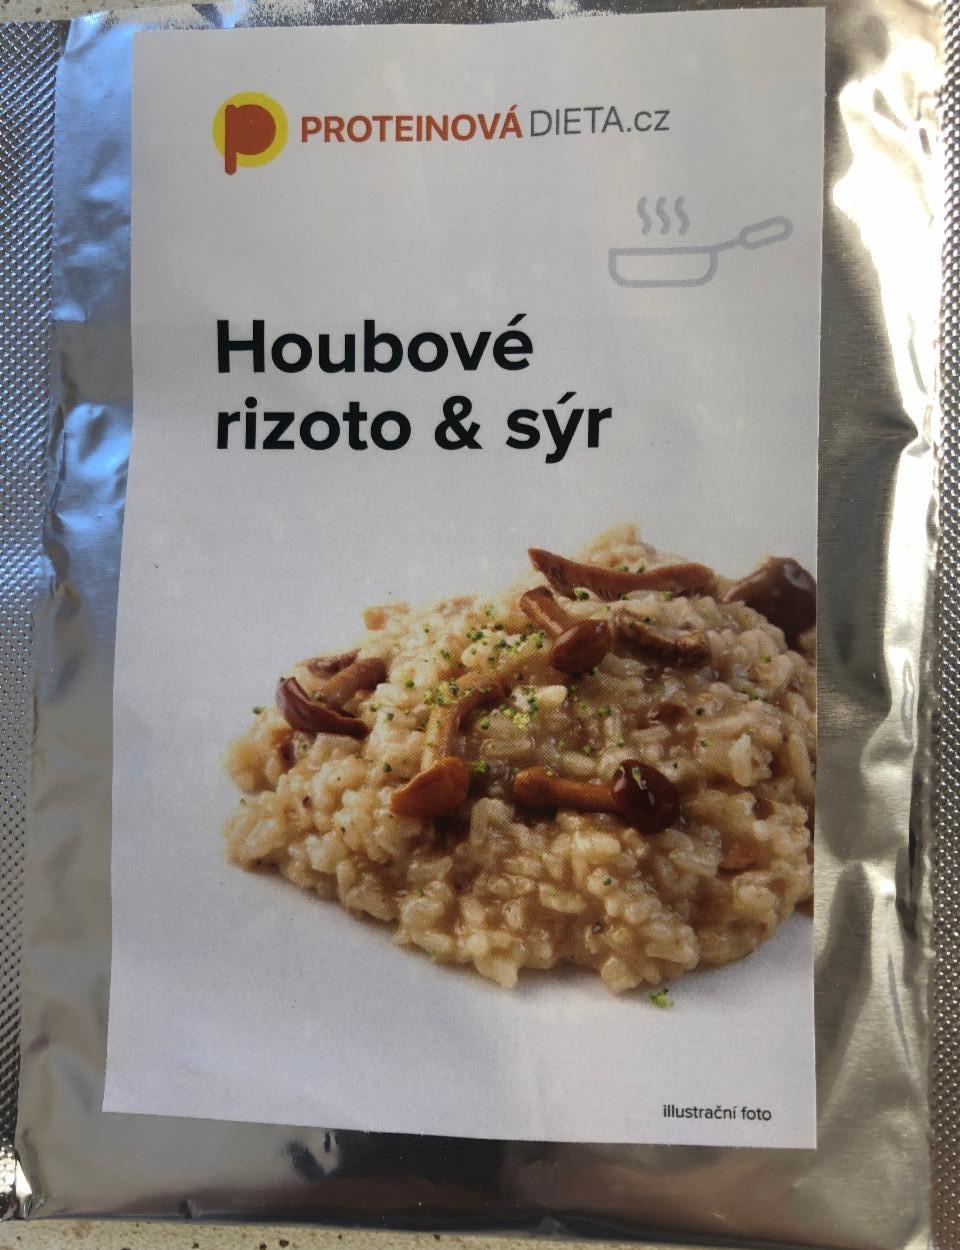 Fotografie - Houbové rizoto & sýr ProteinováDieta.cz